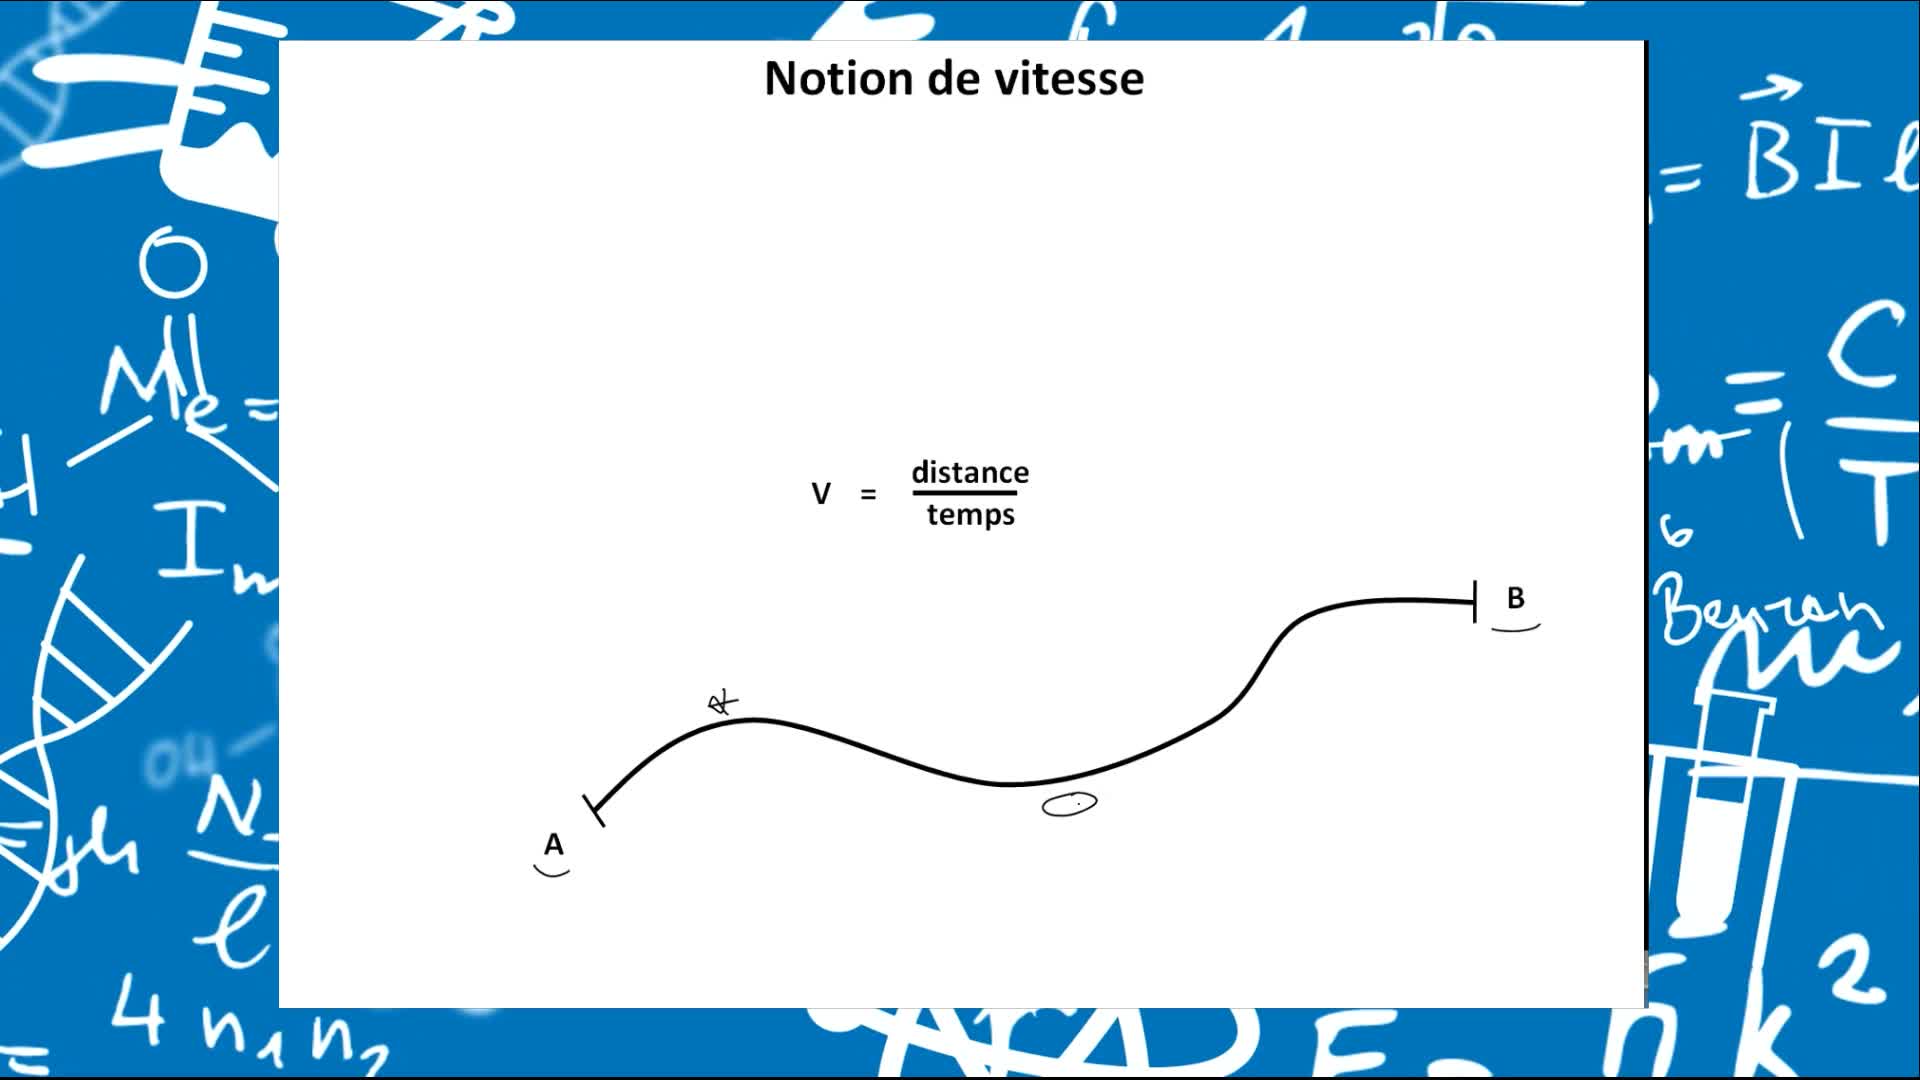 Remediation - Vecteurs position, vitesses et accélérations décrits en coordonnées cartésiennes et polaires - VIDEO 07-vecteur vitesse